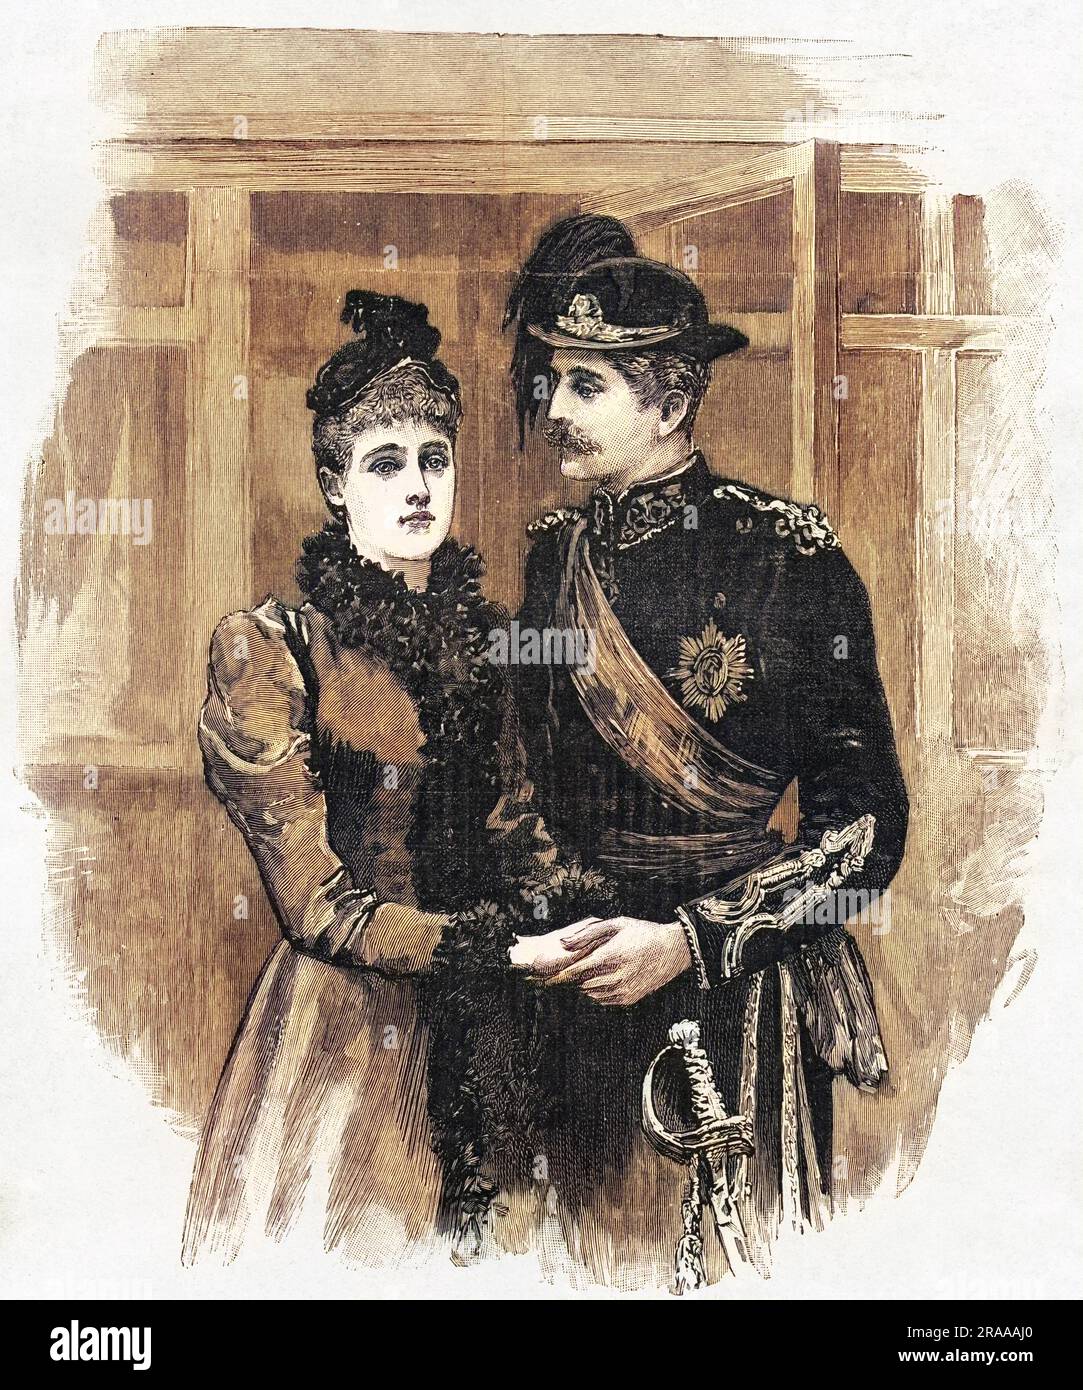 La principessa Maria di Edimburgo (poi regina Maria di Romania) incontra il suo futuro marito, il principe Ferdinando Vittorio di Romania alla stazione ferroviaria di Sigmaringen prima del loro matrimonio il 10 gennaio 1893. Data: 1893 Foto Stock